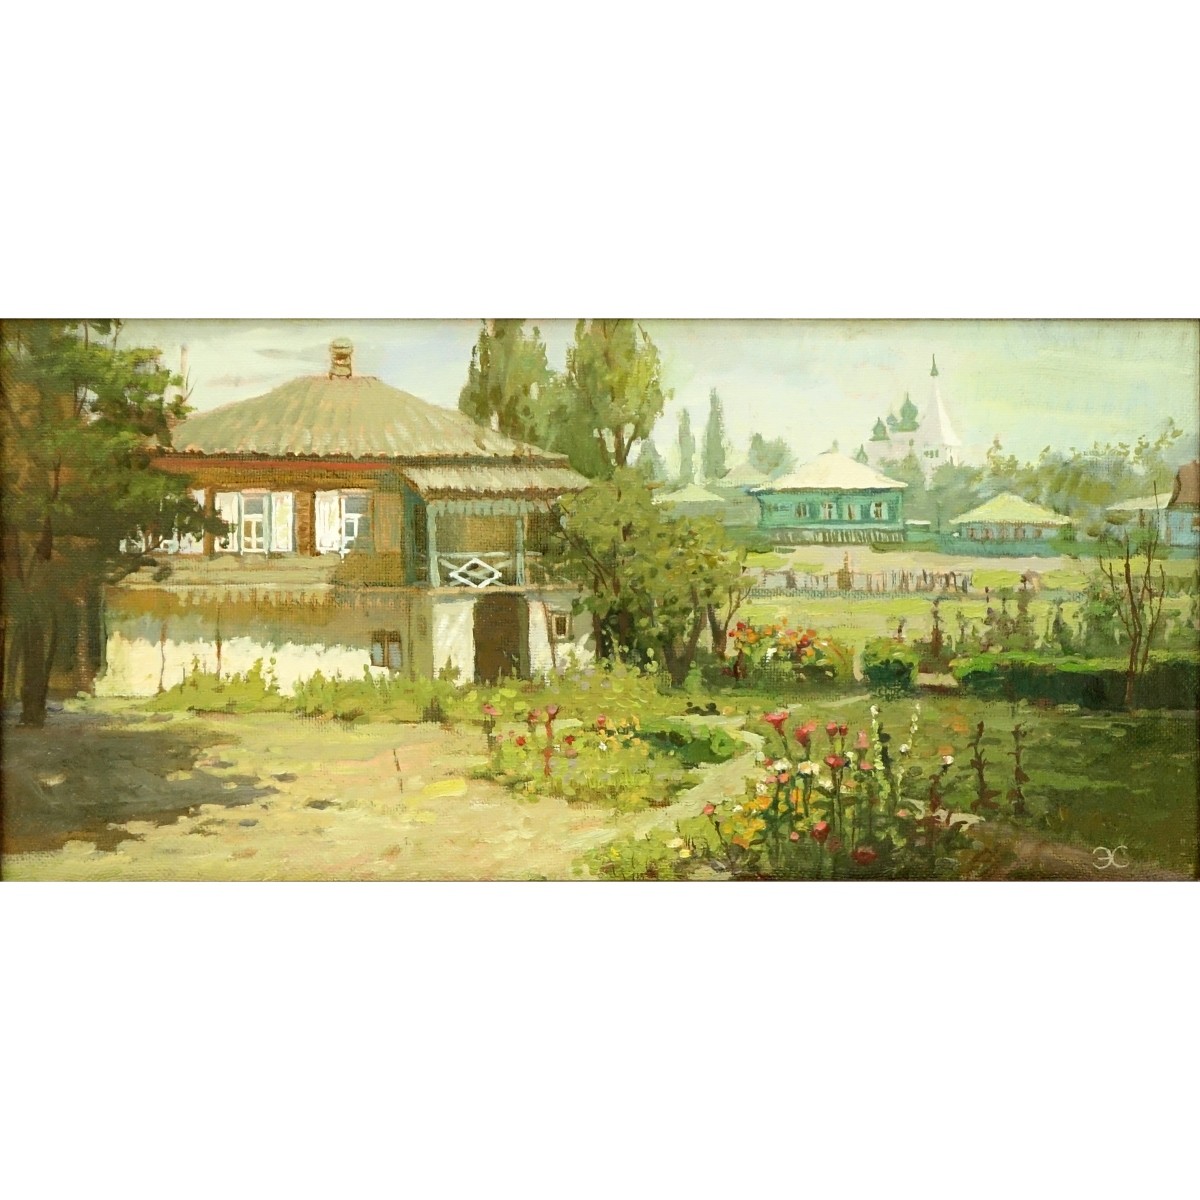 Sayfullina-ei, Russian (20th C.) Oil On Canvas